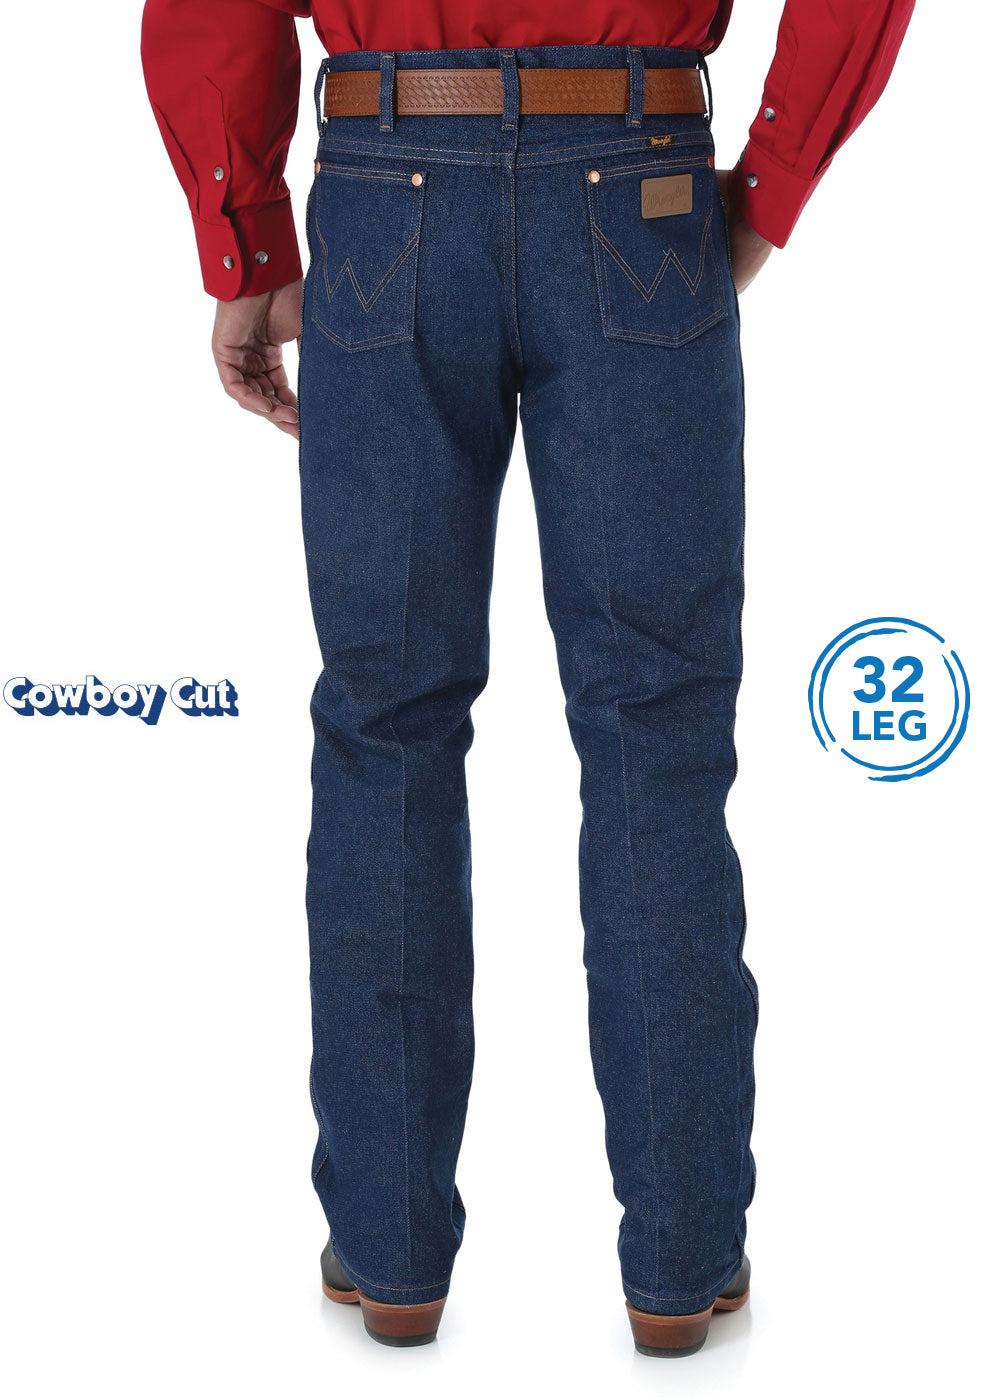 0936DEN32 Mens Cowboy Cut Slim Fit Jean | 32 Leg